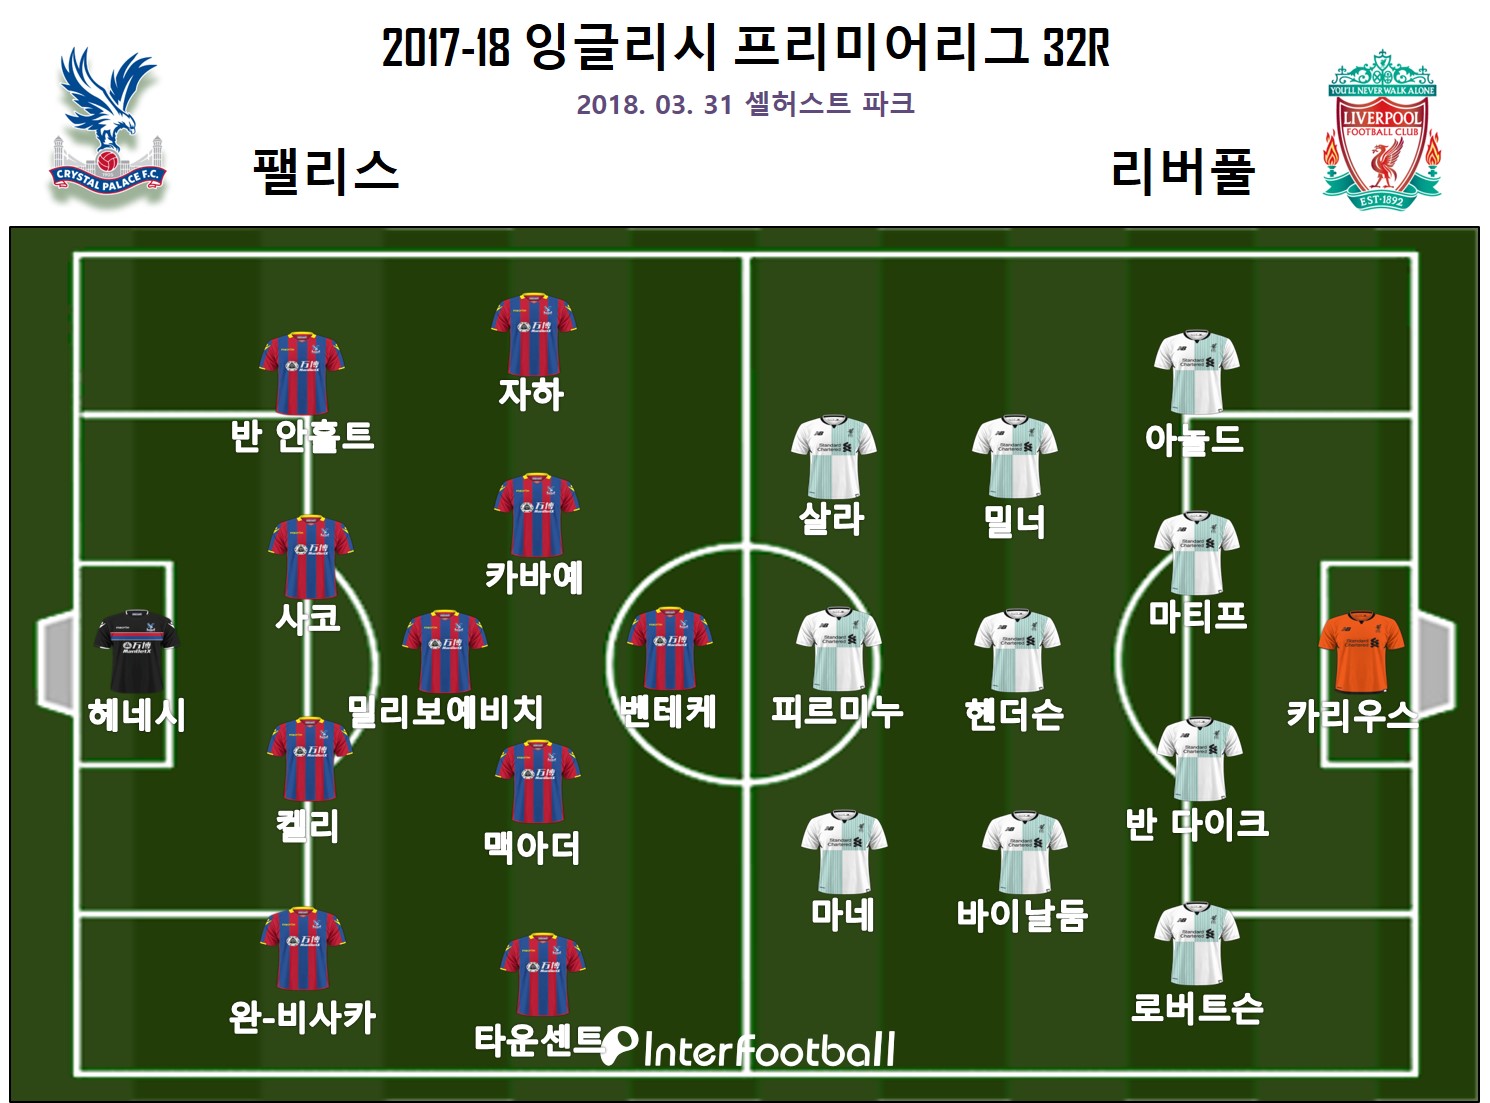 [먹튀검증소 뉴스] ‘살라 결승골’ 리버풀, 팰리스에 힘겨운 2-1 역전승...2위 도약